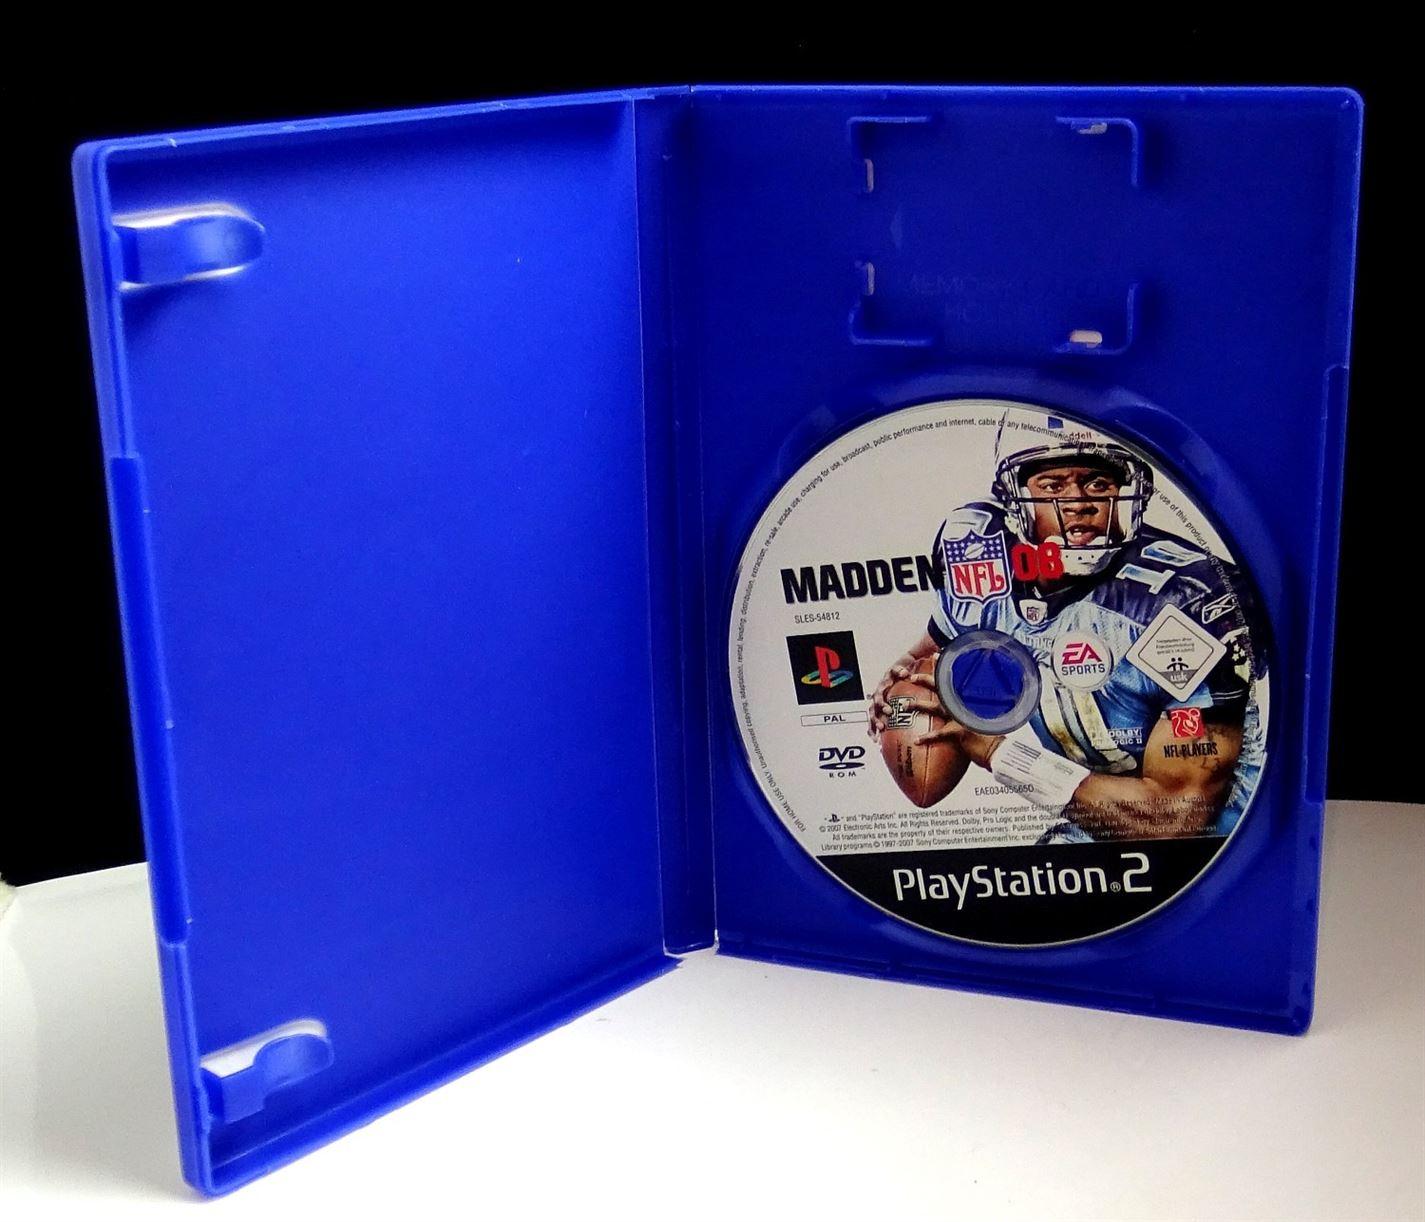 Madden NFL 08 PS2 (Playstation 2) - UK Seller